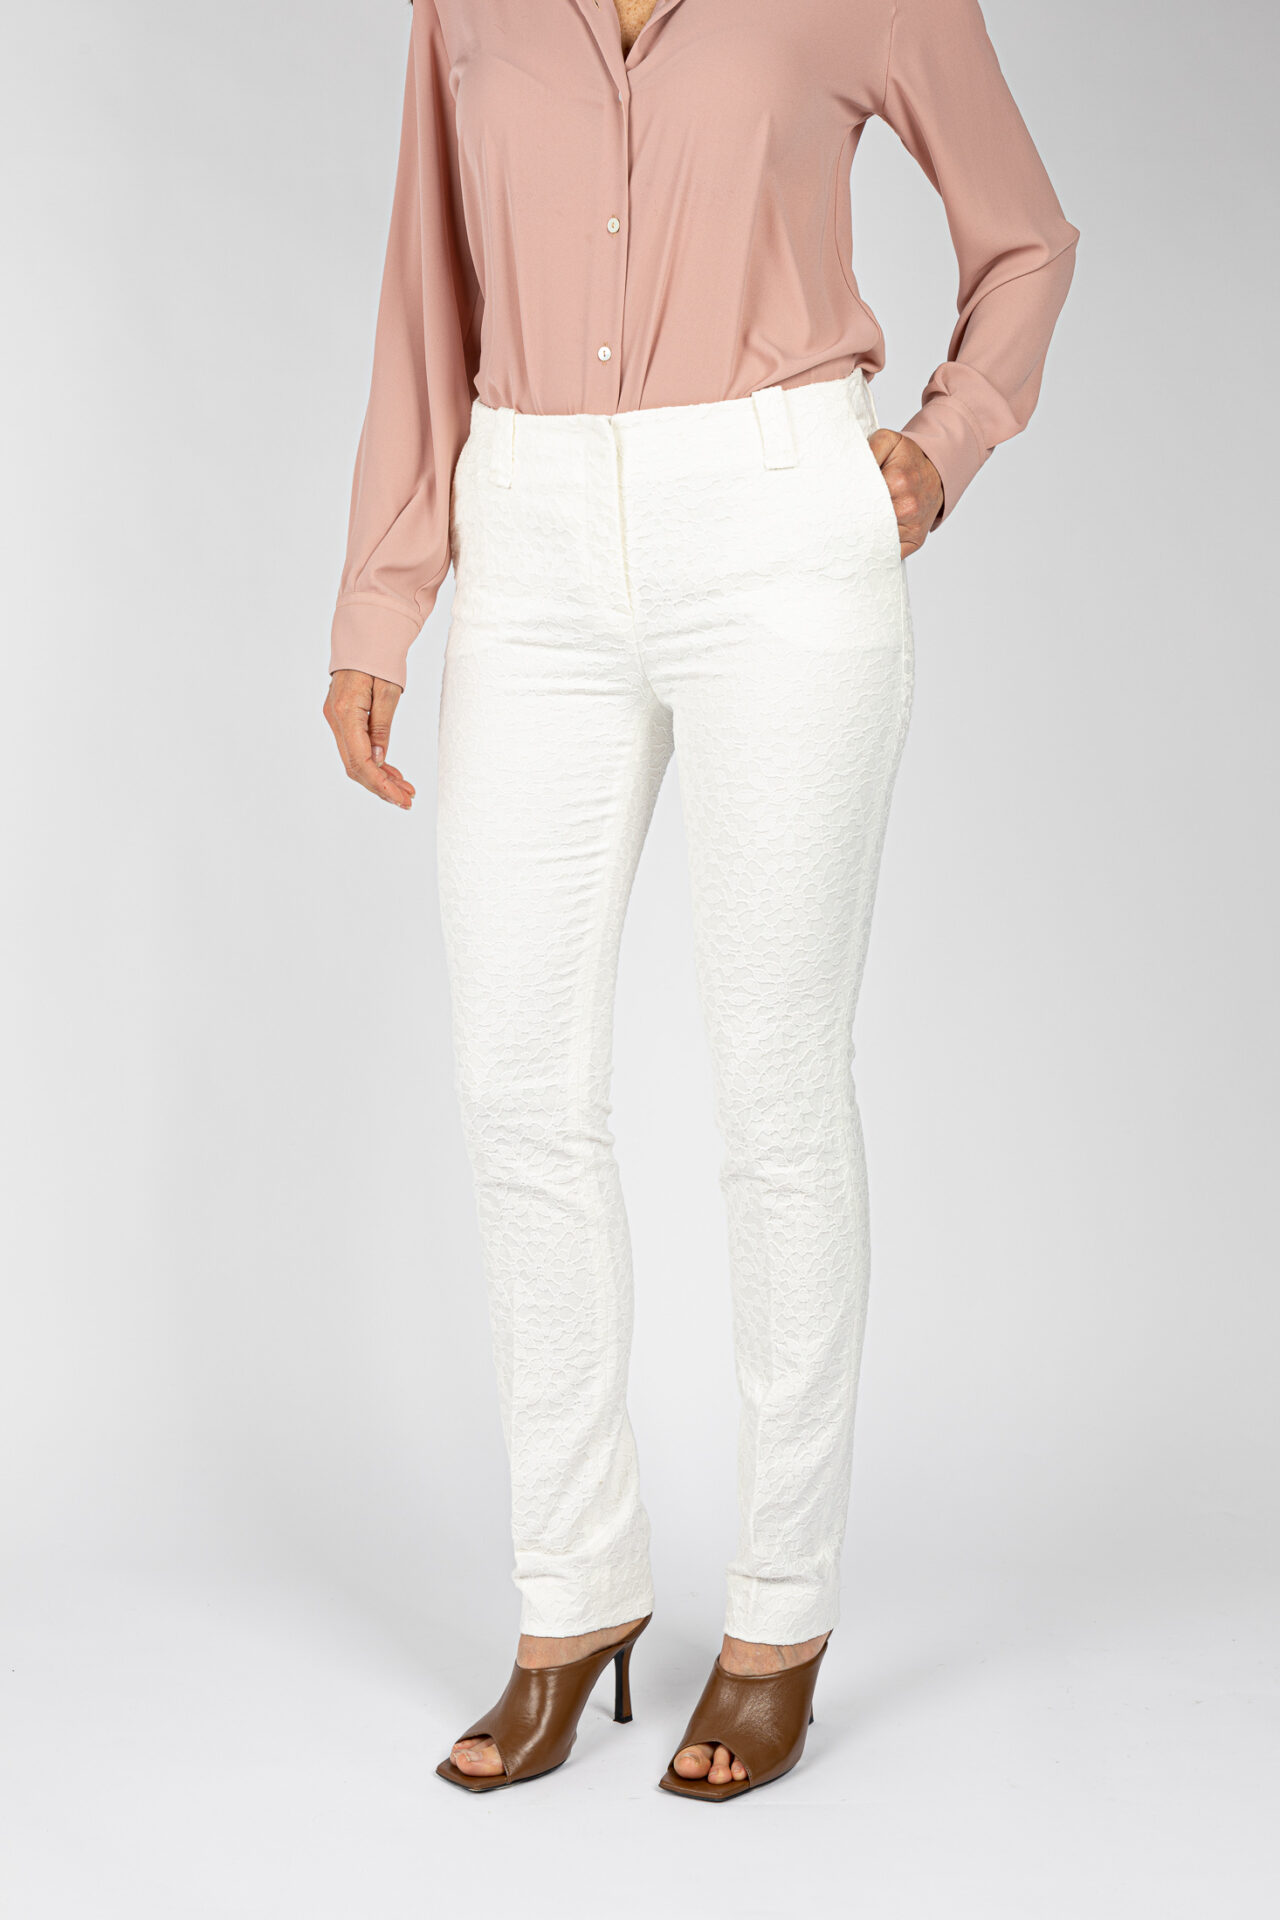 Pantaloni gamba regolare tessuto jacquard colore bianco P19671T51 - 3